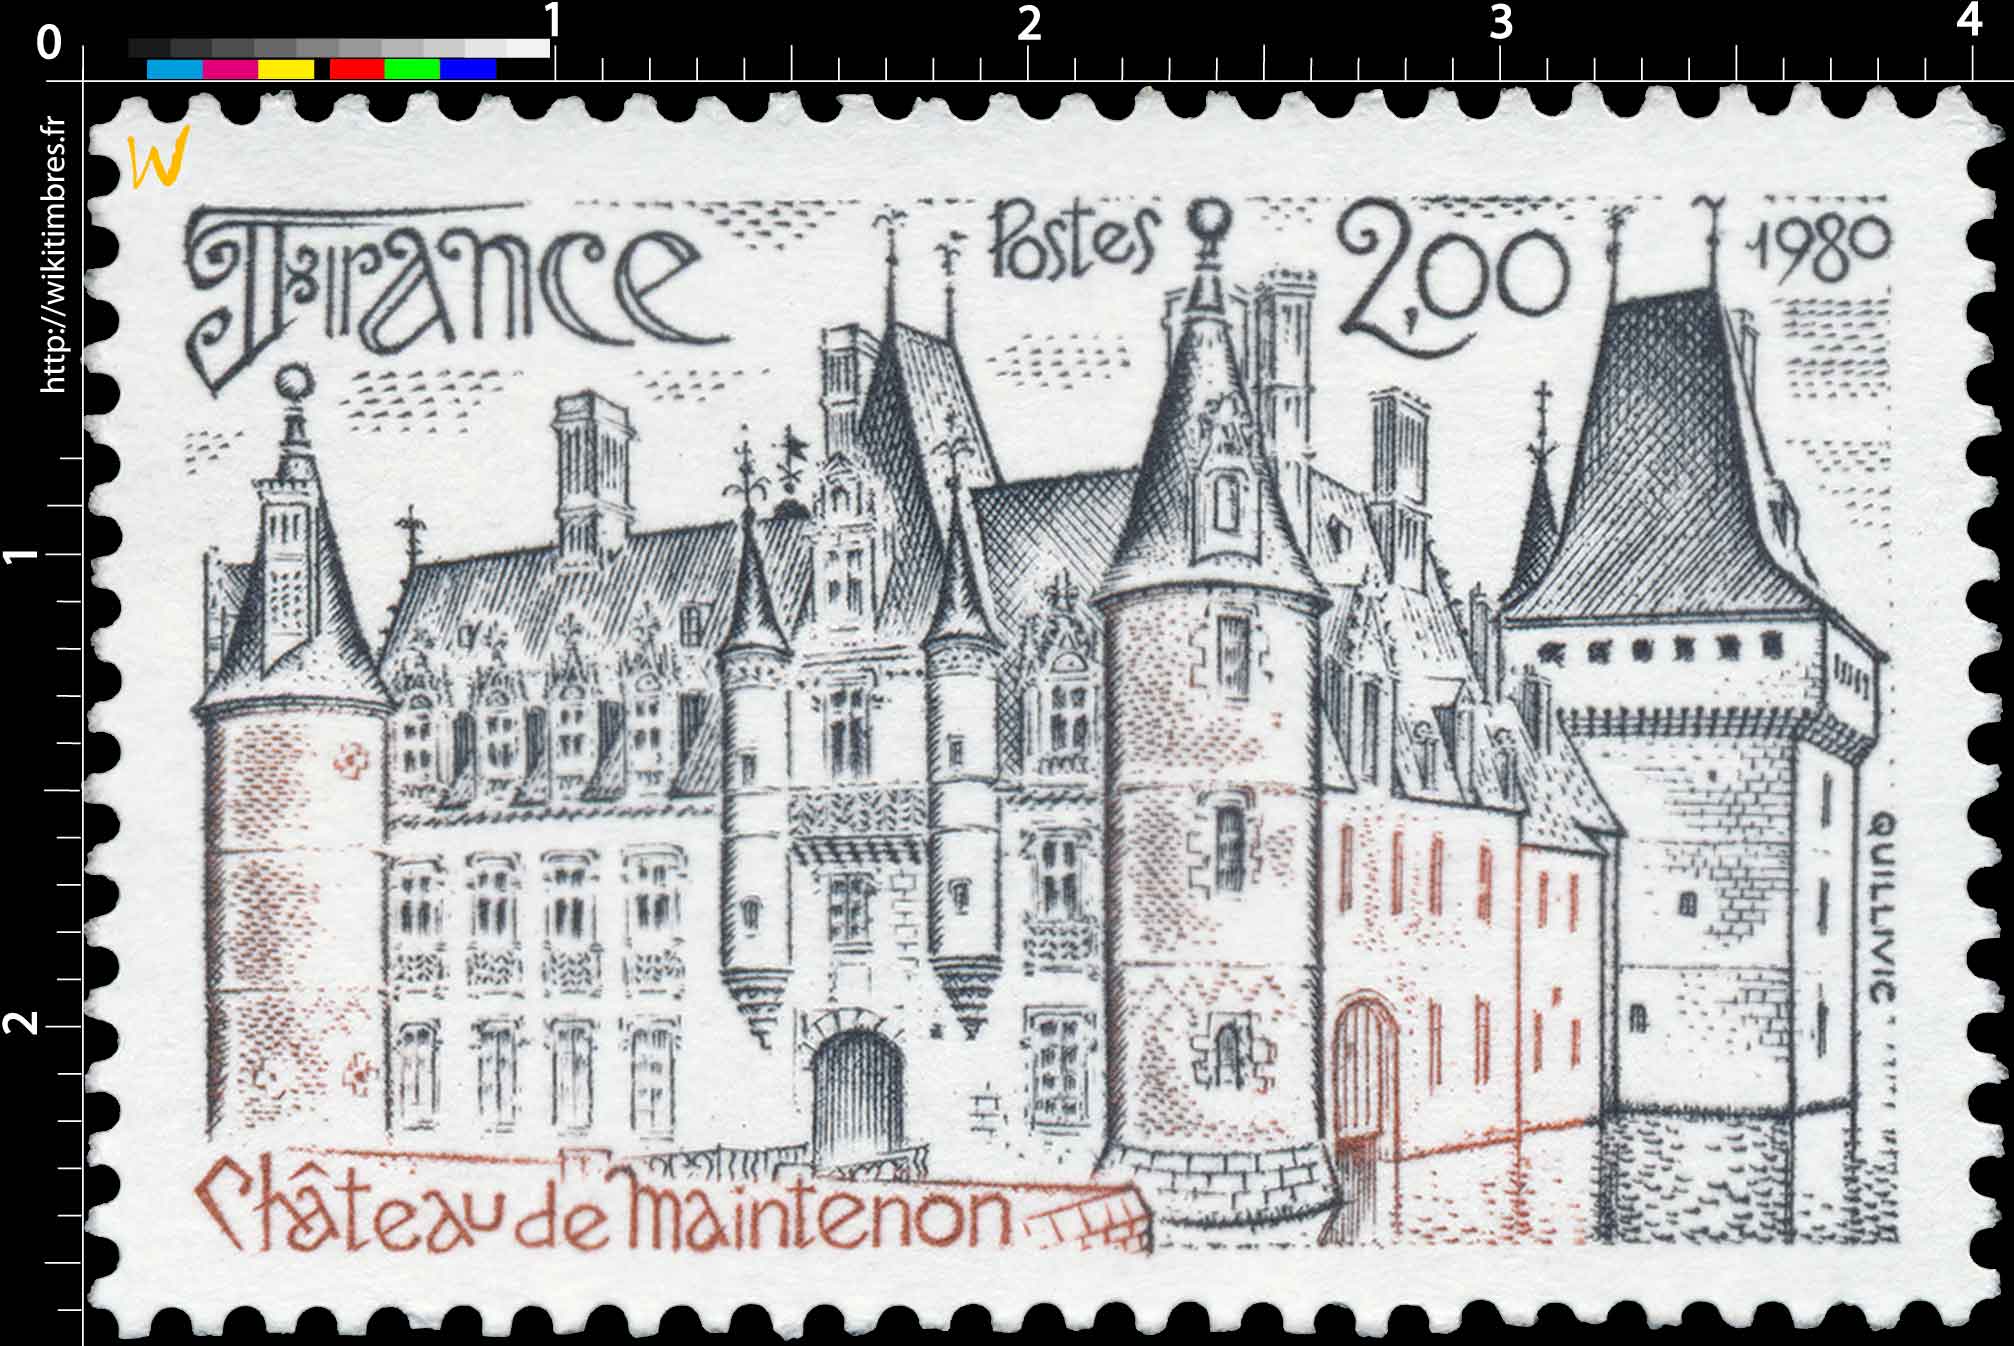 1980 Château de Maintenon